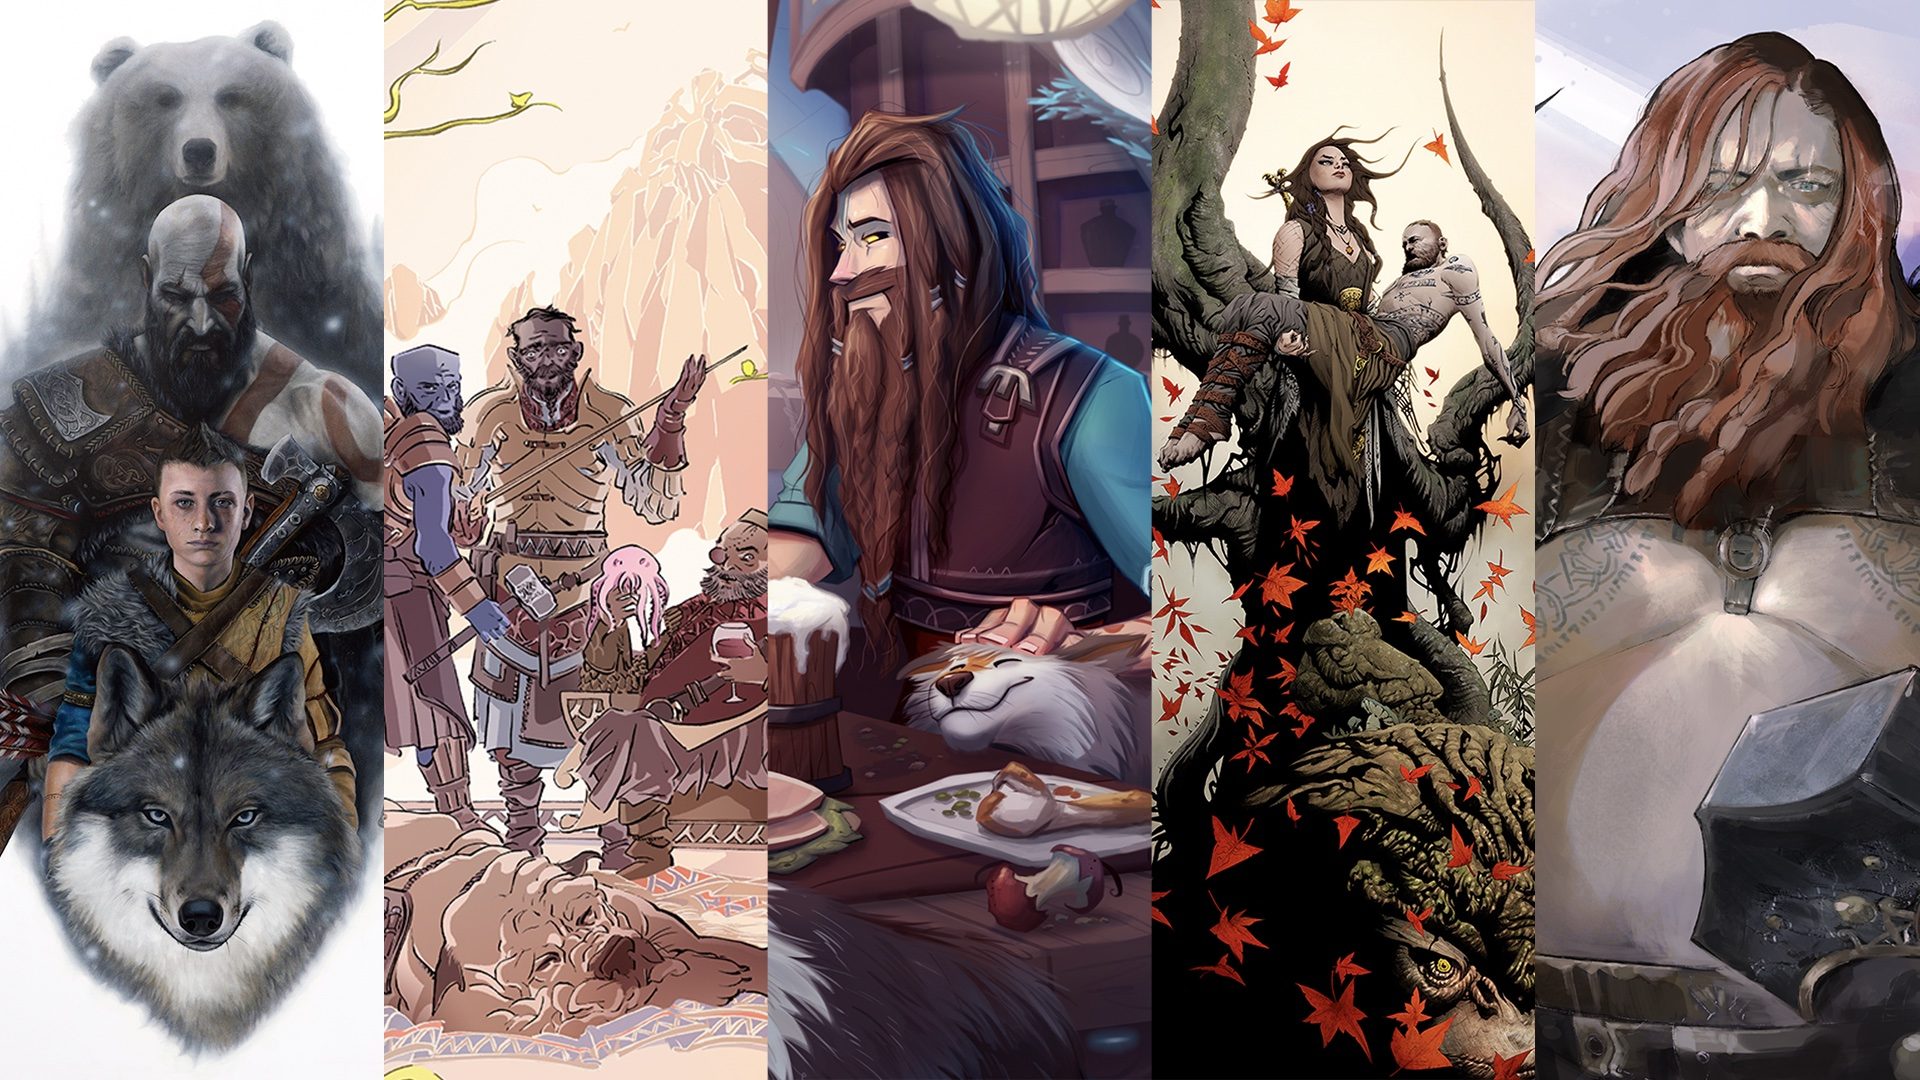 God of War Ragnarök Animated Family Portraits highlight 5 key relationships  – PlayStation.Blog